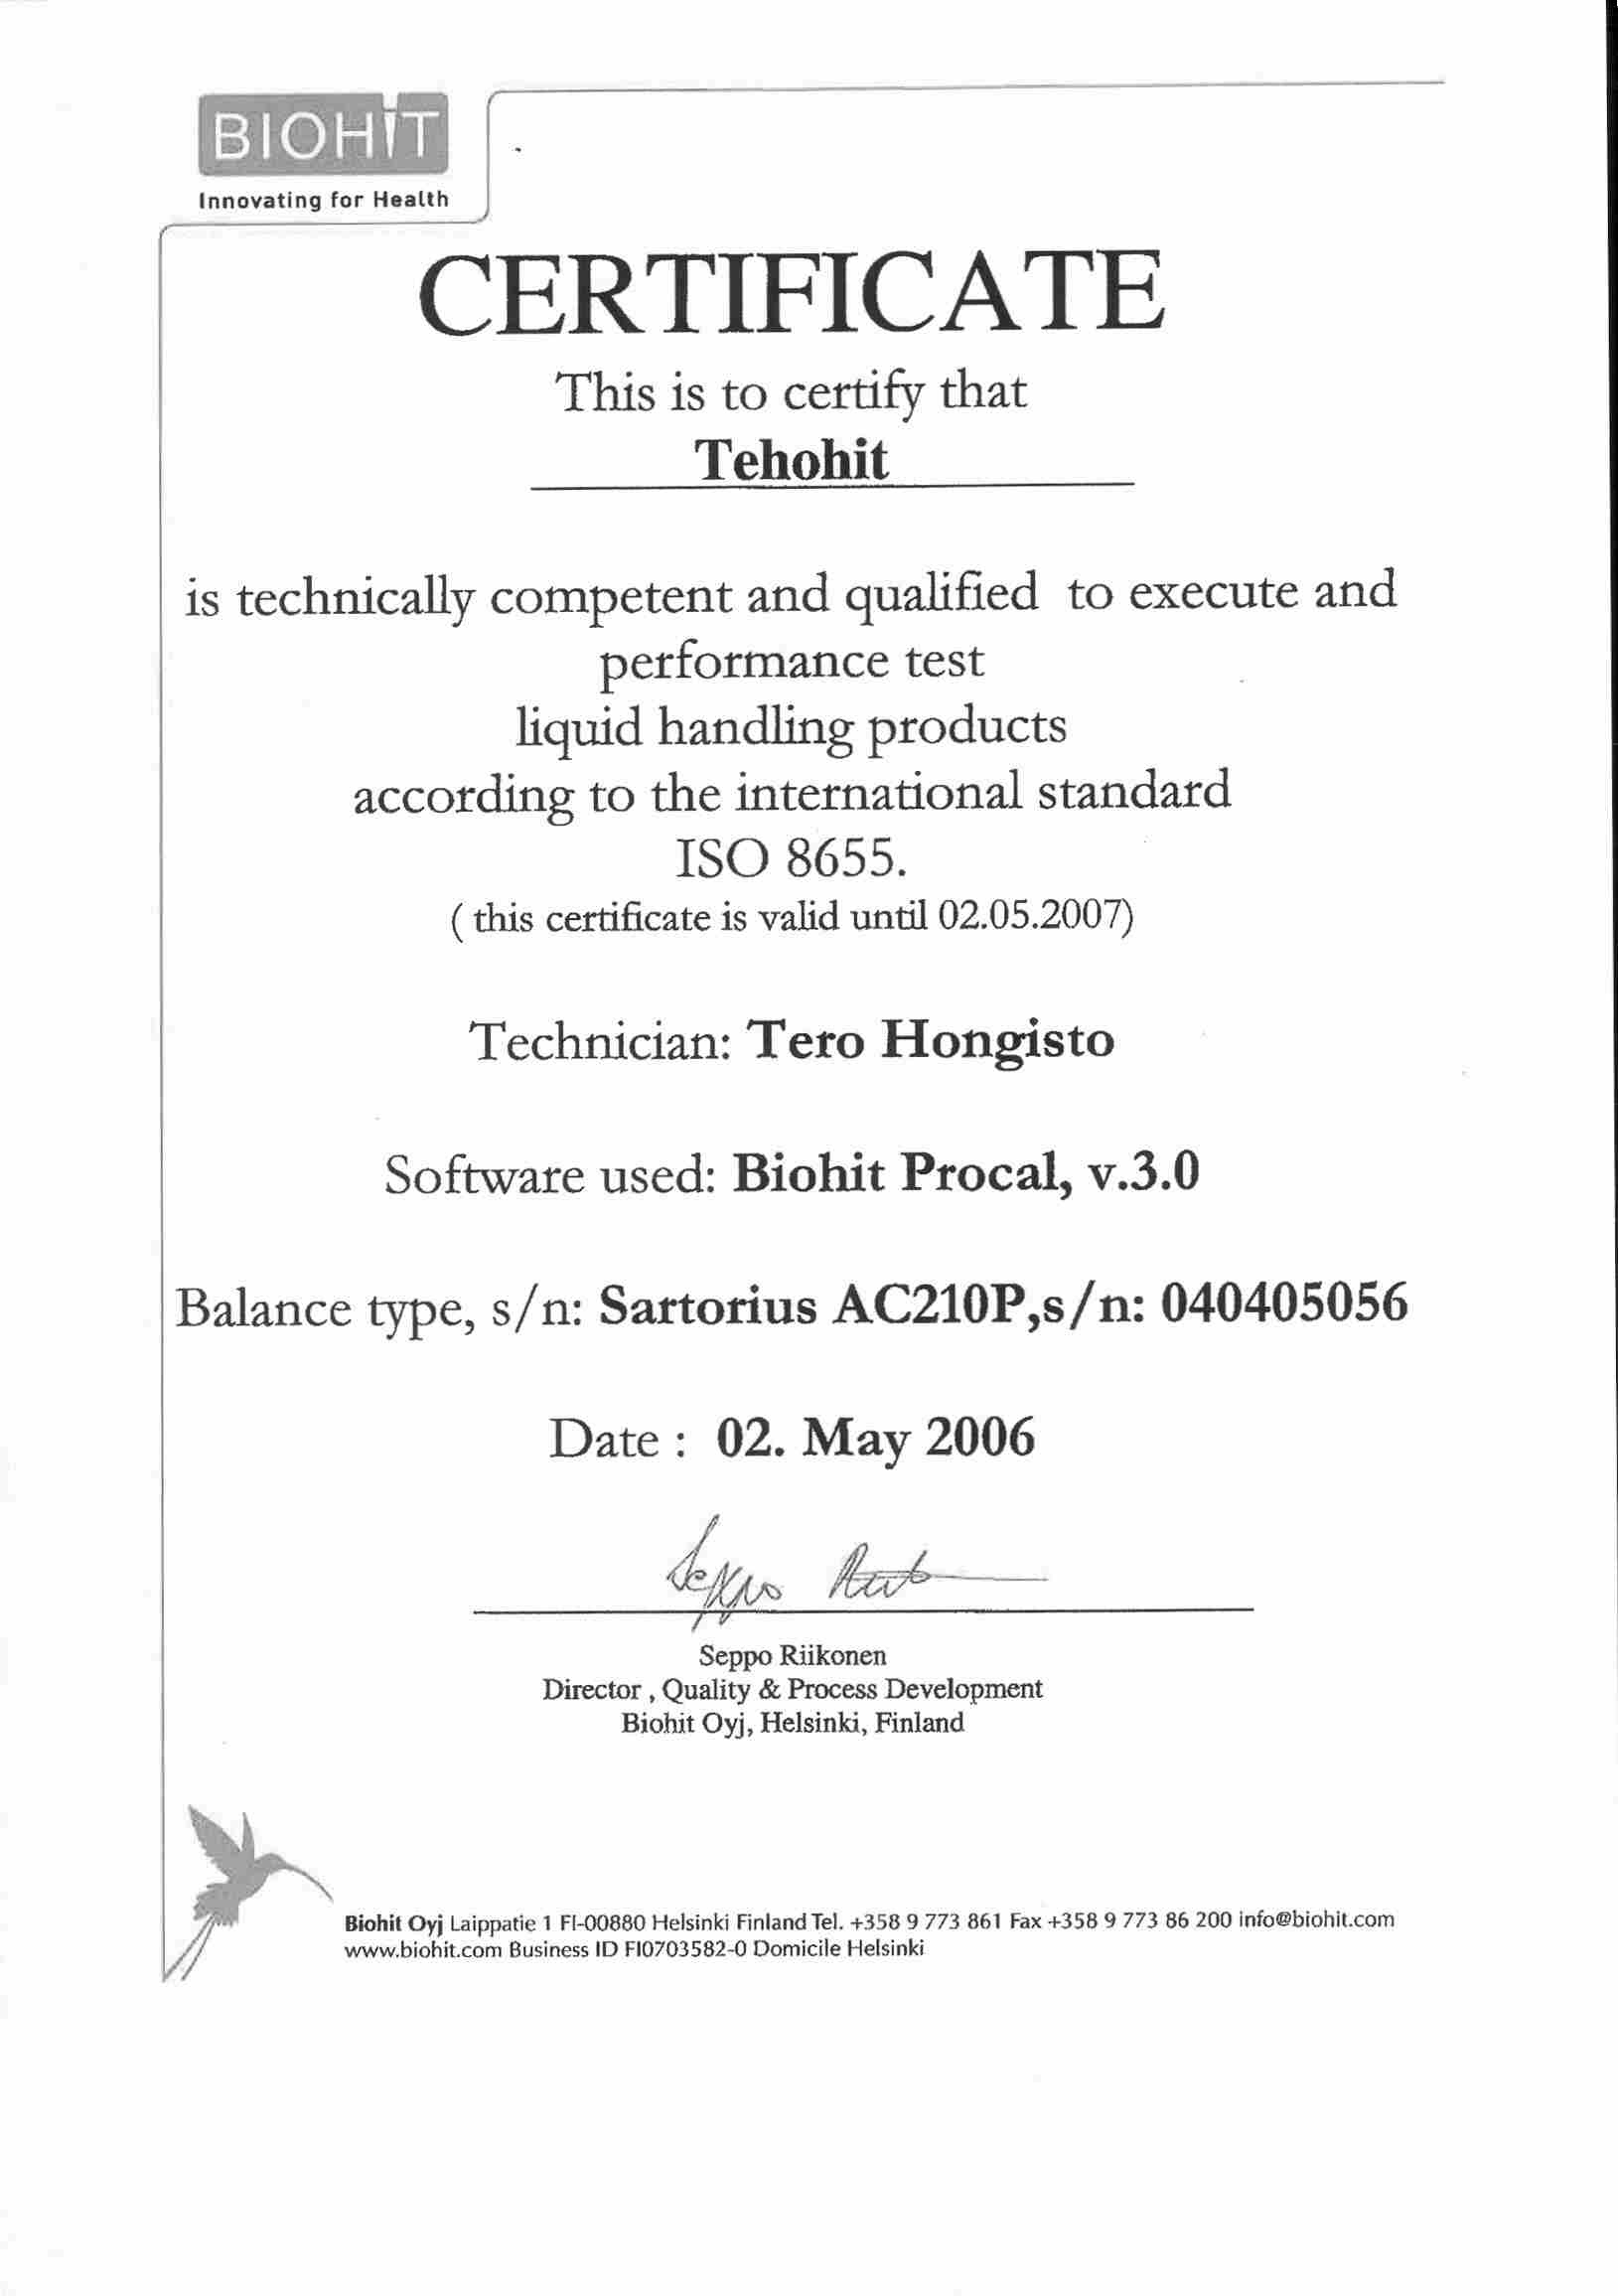 teho-certificate.jpg